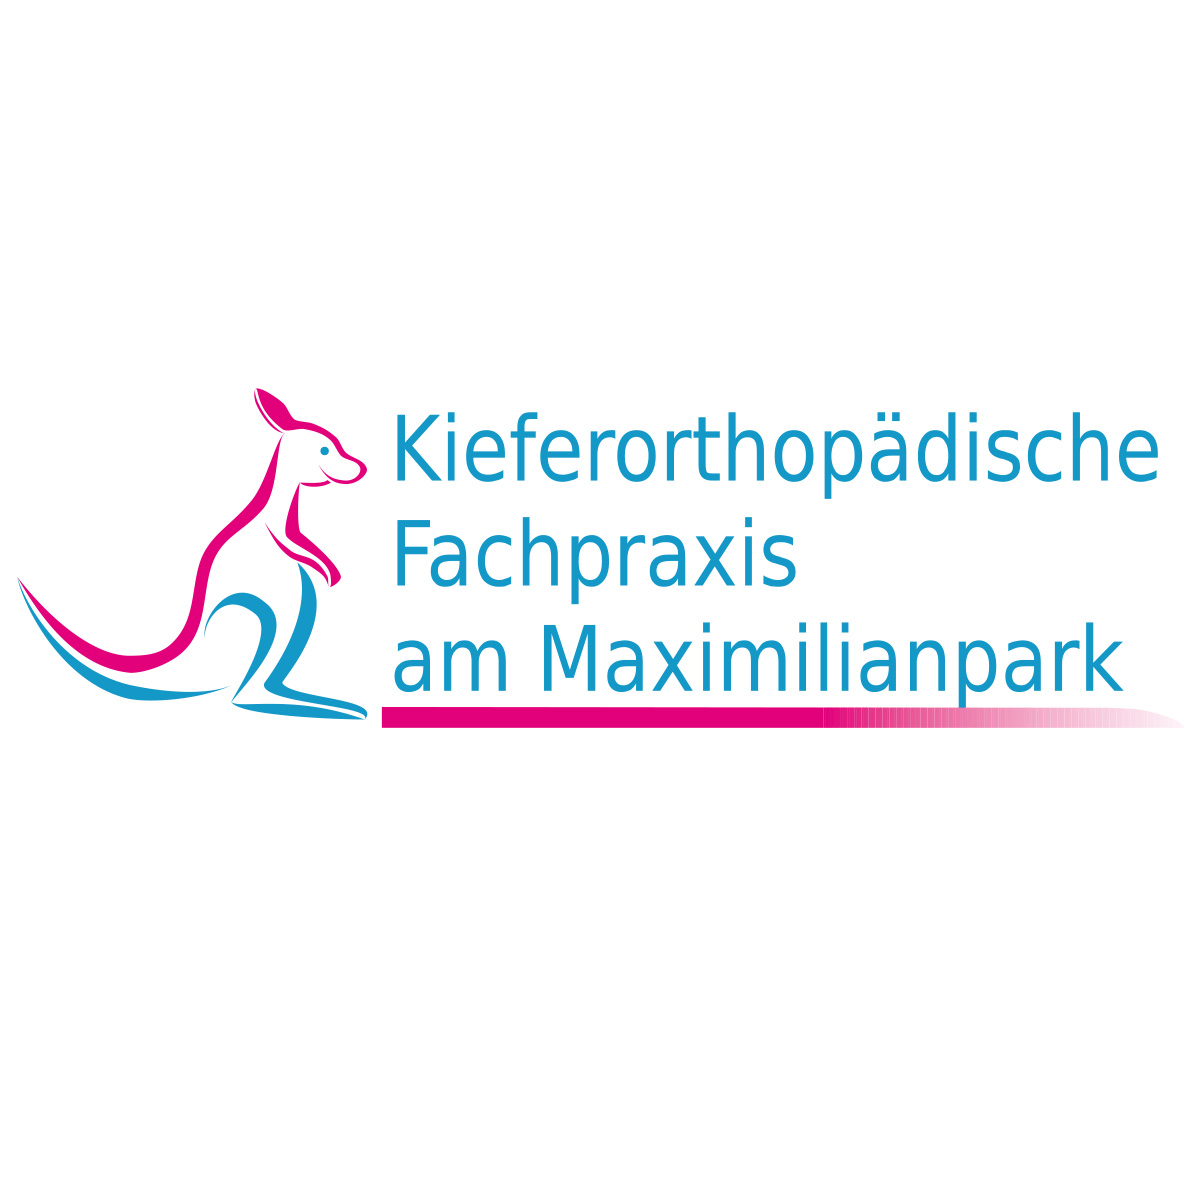 Kieferorthopädische Fachpraxis am Maximilianpark - Dr. Flieger & Dr. Ziebura in Hamm in Westfalen - Logo